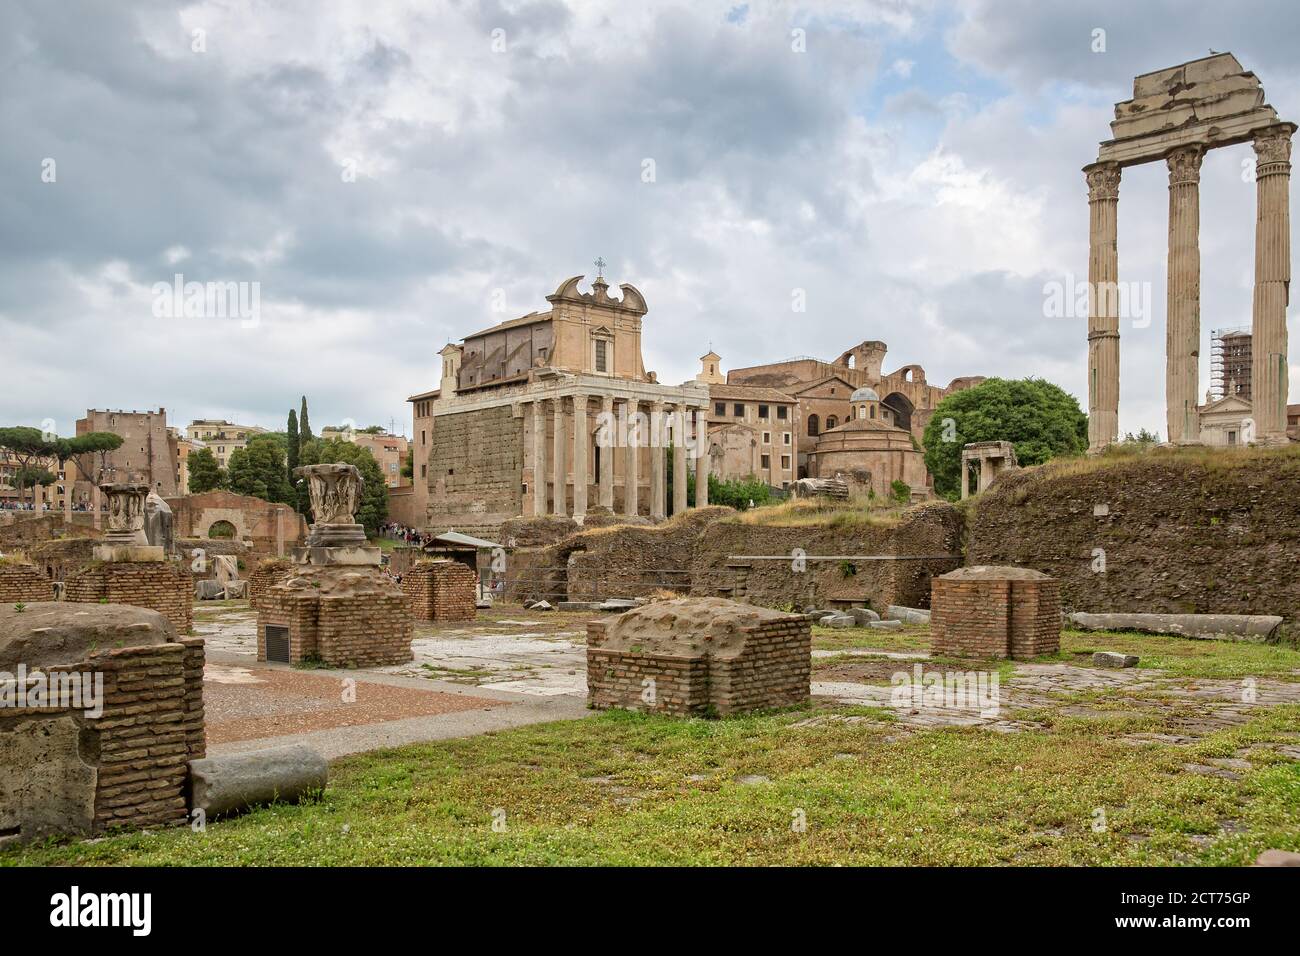 Gran vista del Templo de Antonino y Faustina en el Foro Romano, Roma, Italia Foto de stock